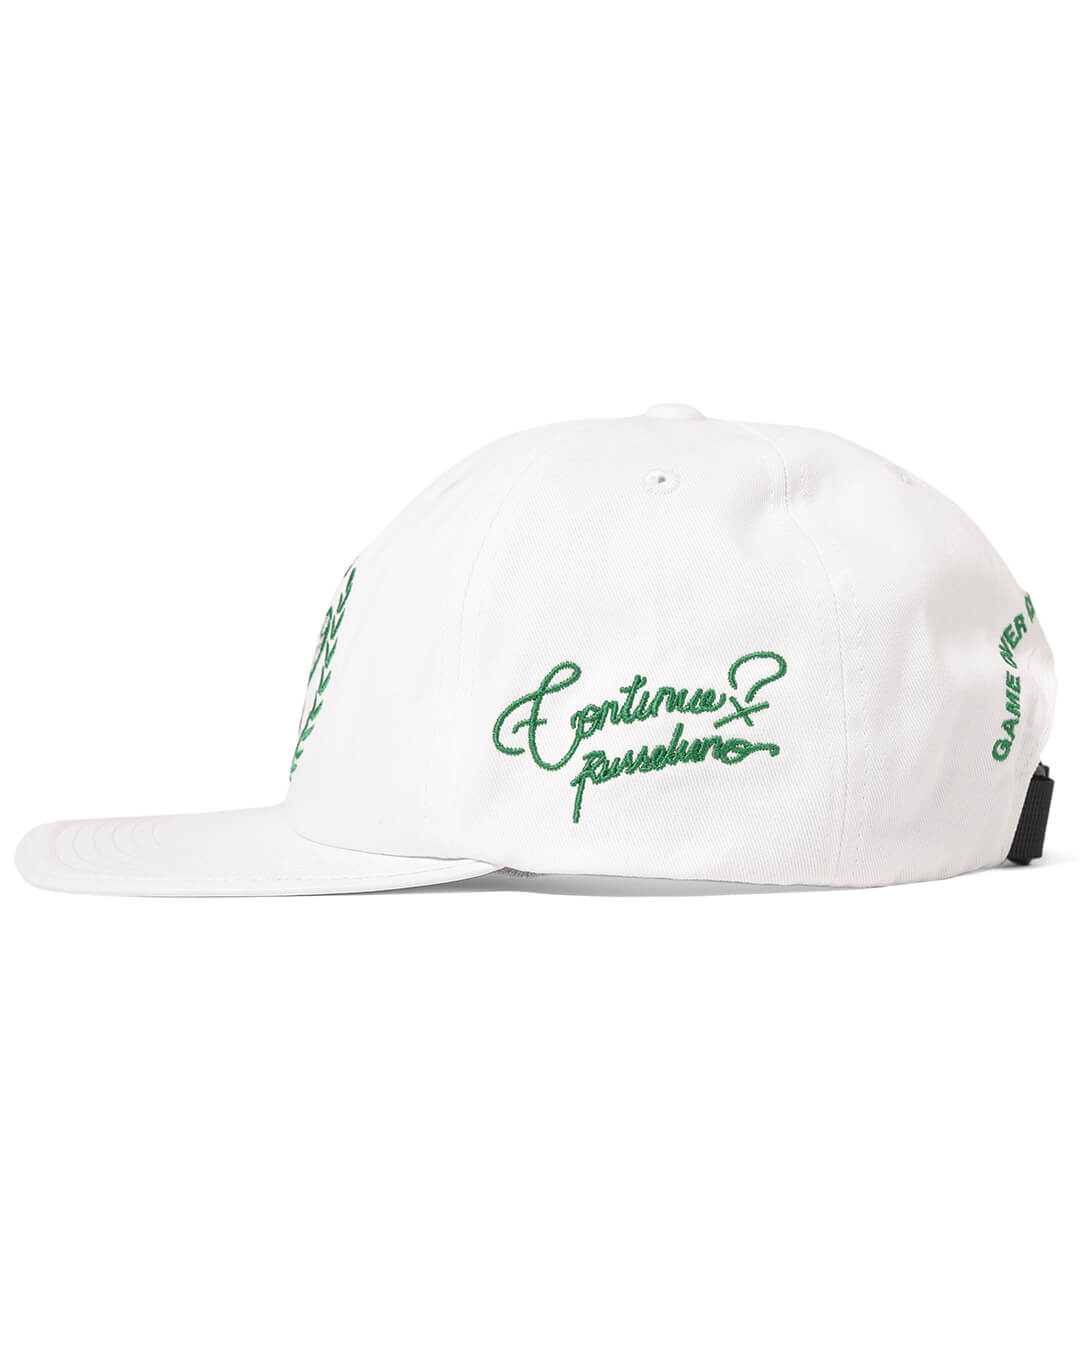 H.C EMBLEM CAP